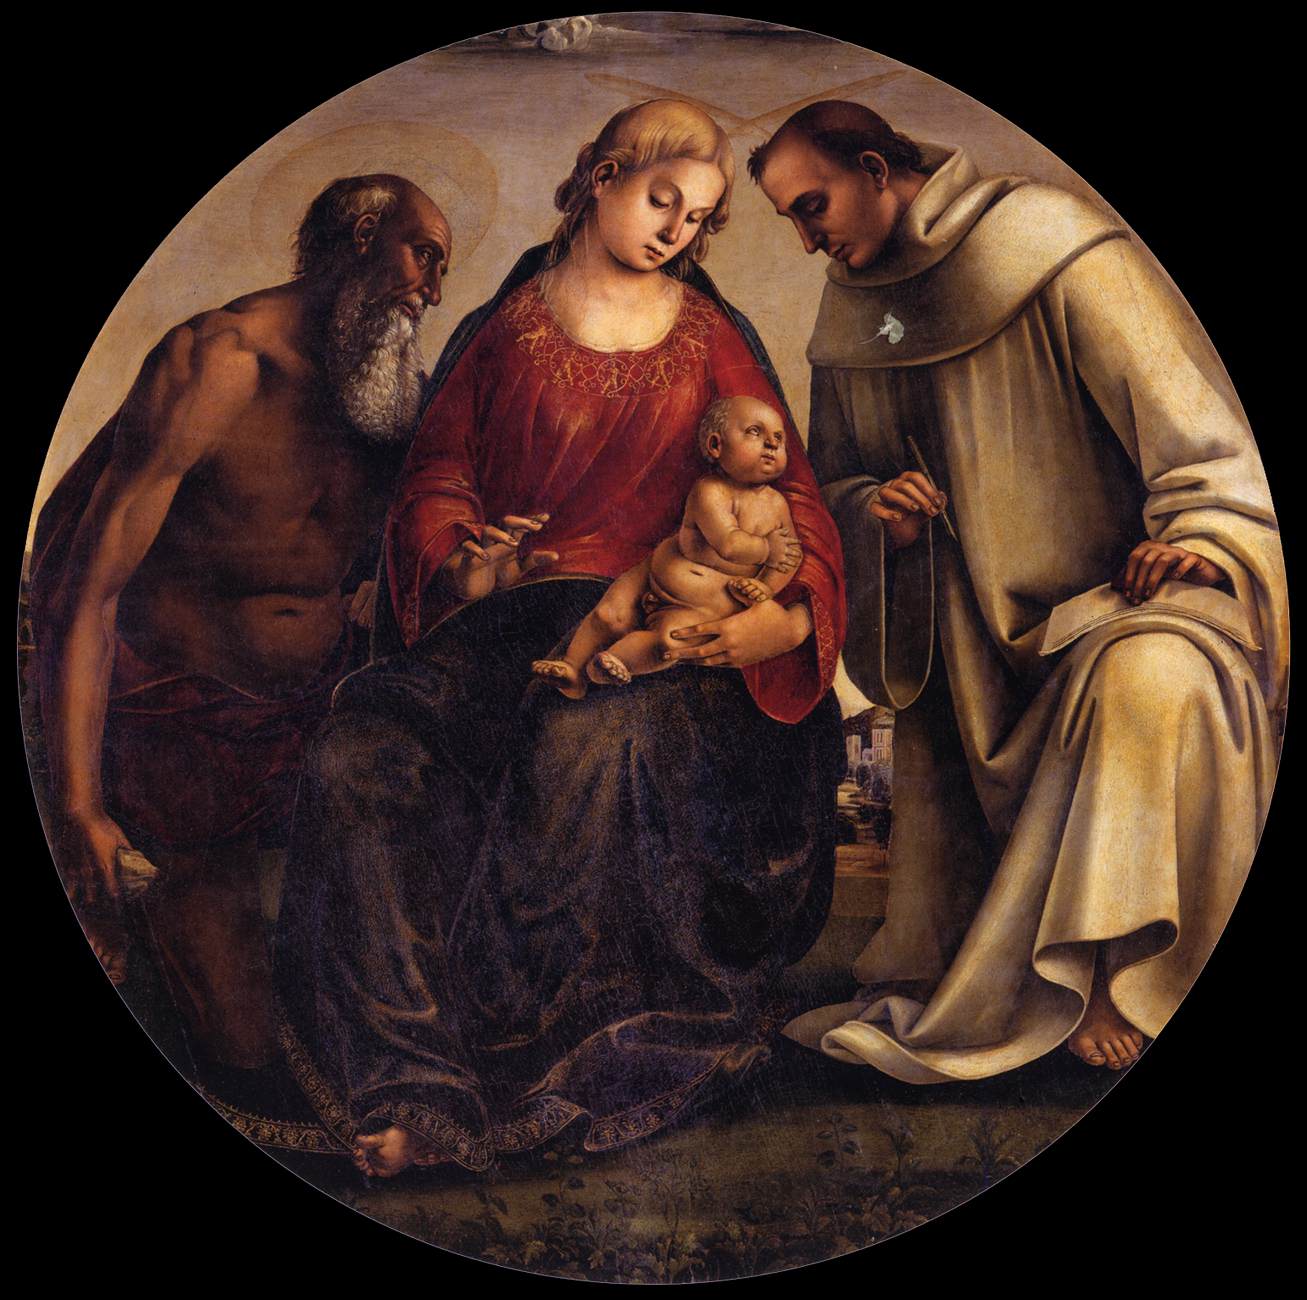 La Vergine e il bambino con San Jerónimo e Bernard de Clairvaux